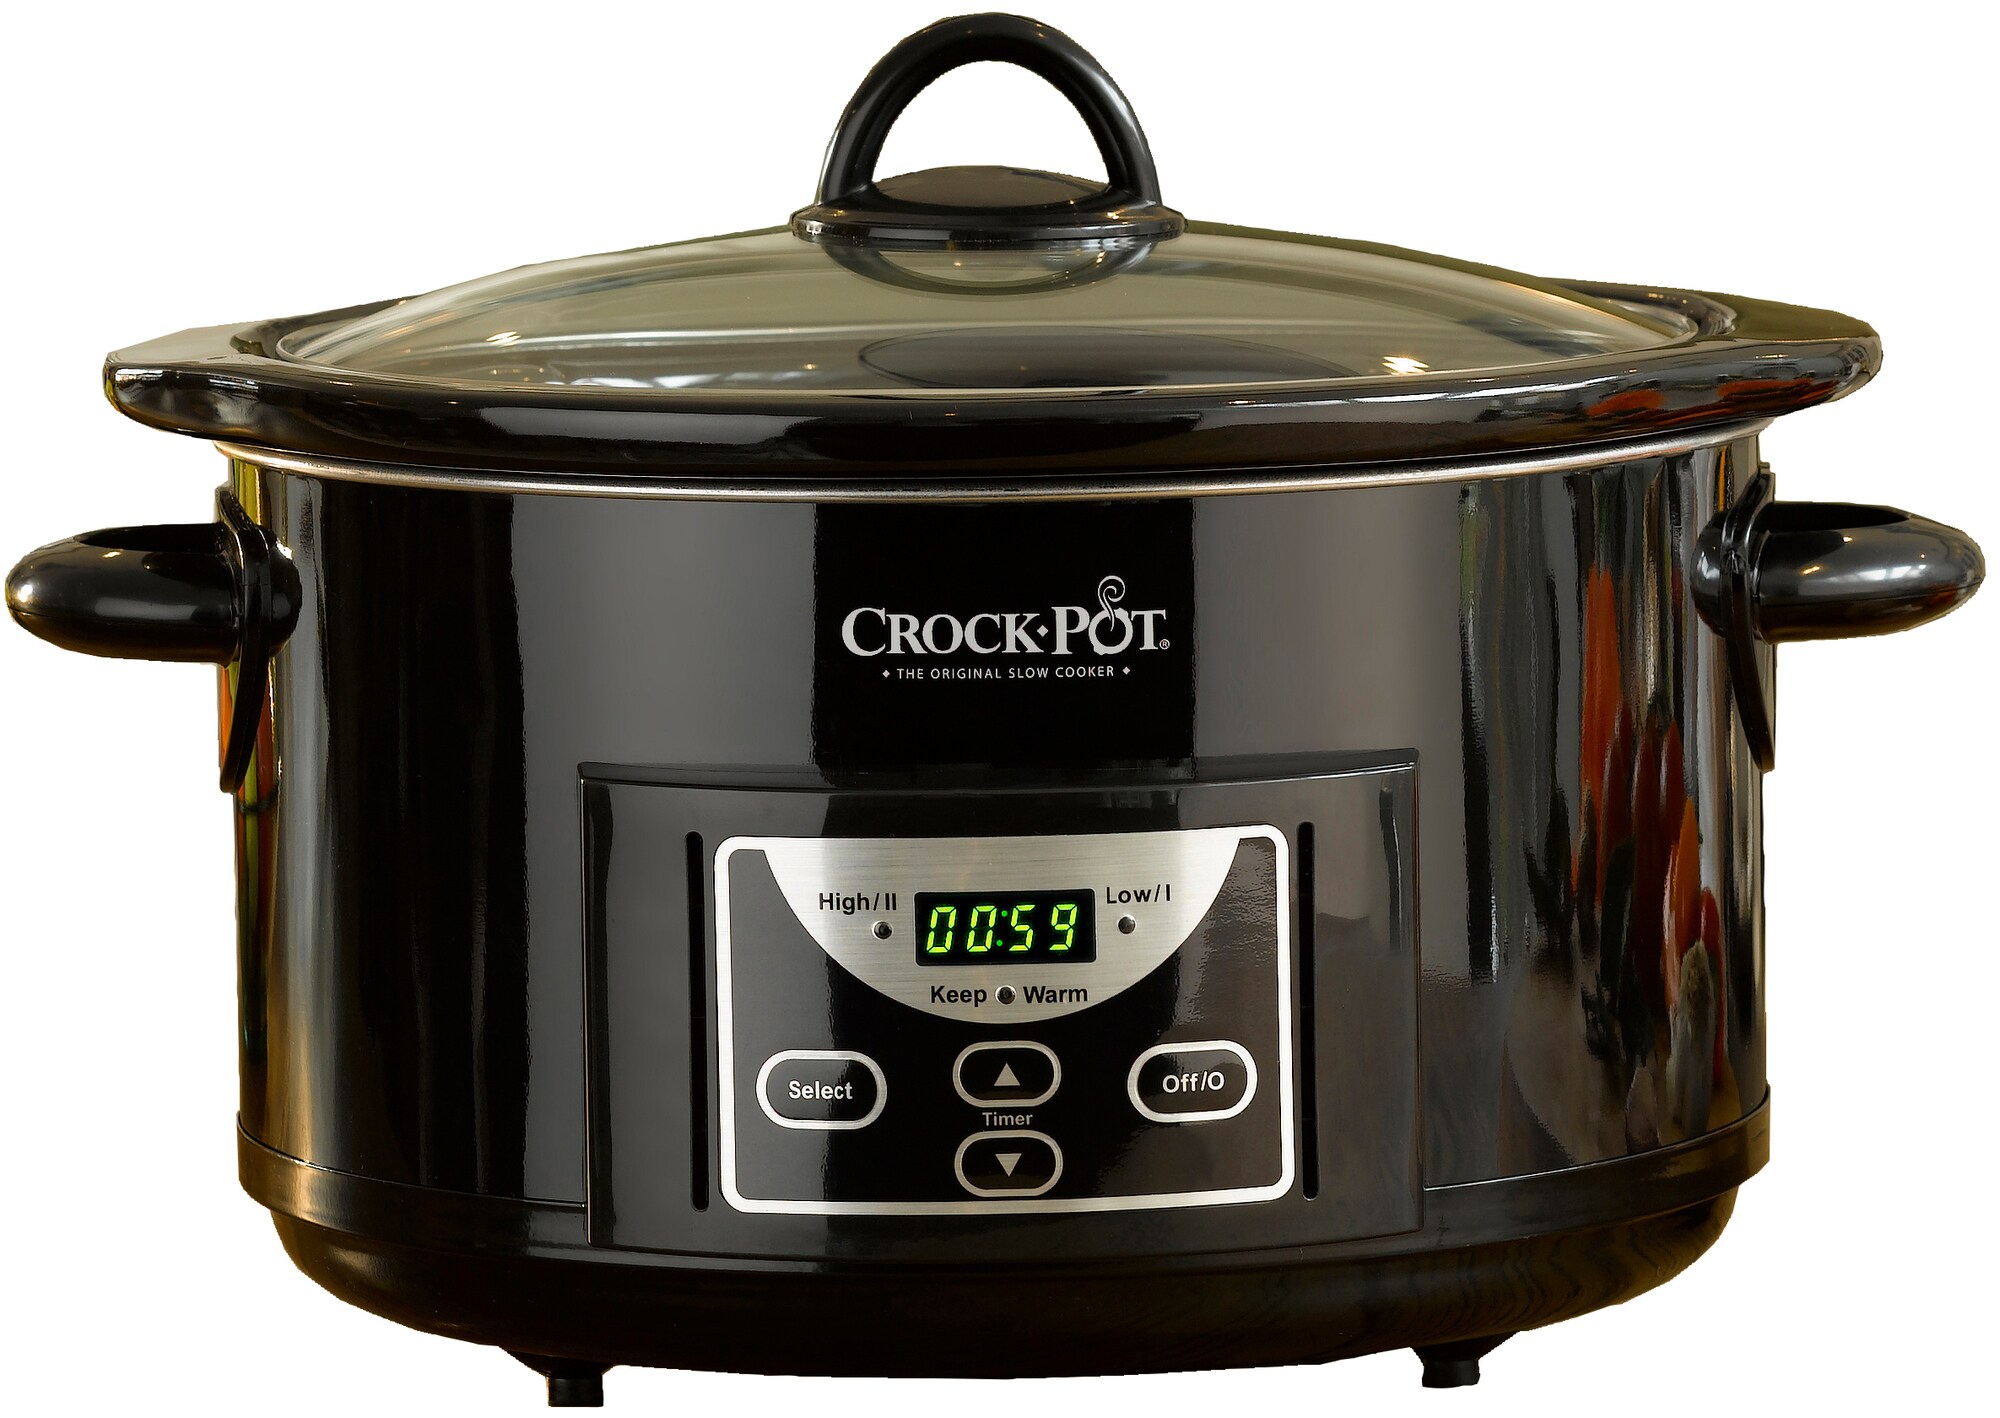 Crock-Pot slow cooker 201009 - Kjøkkenapparater - Elkjøp